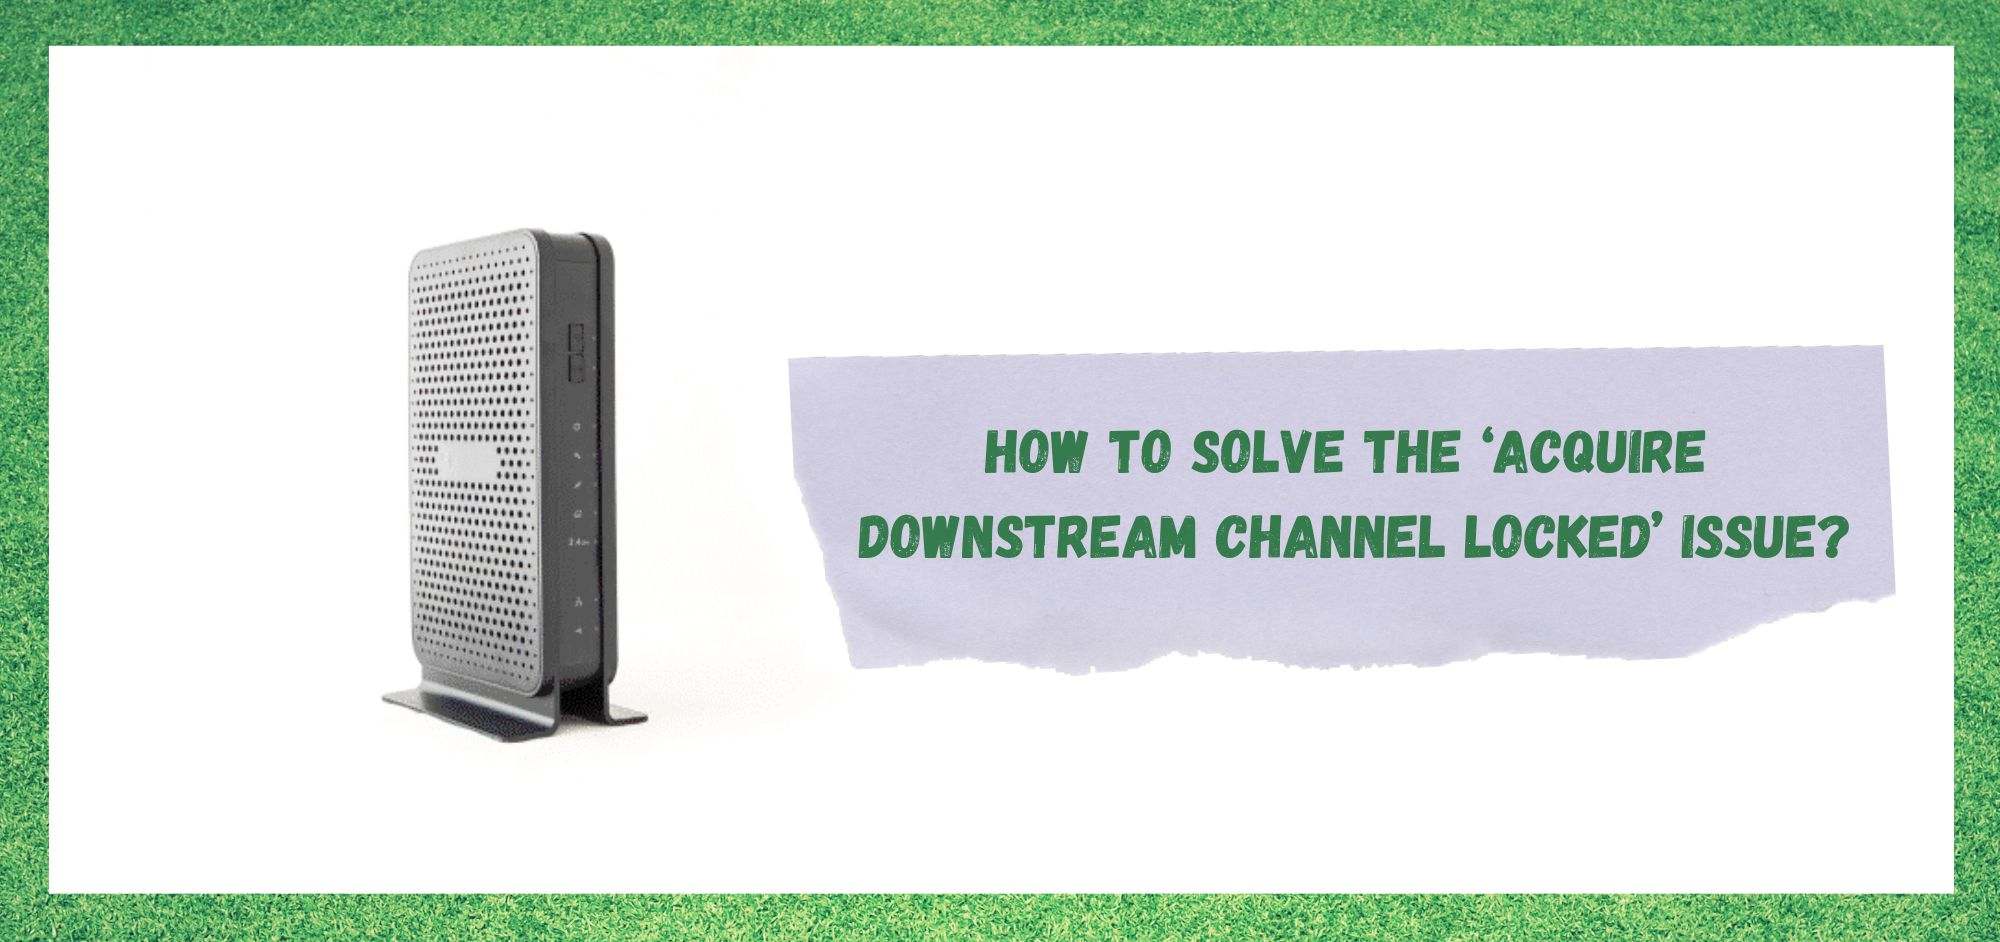 လော့ခ်ချထားသော Downstream Channel ကိုရယူပါ- ပြင်ဆင်ရန် နည်းလမ်း 7 ခု